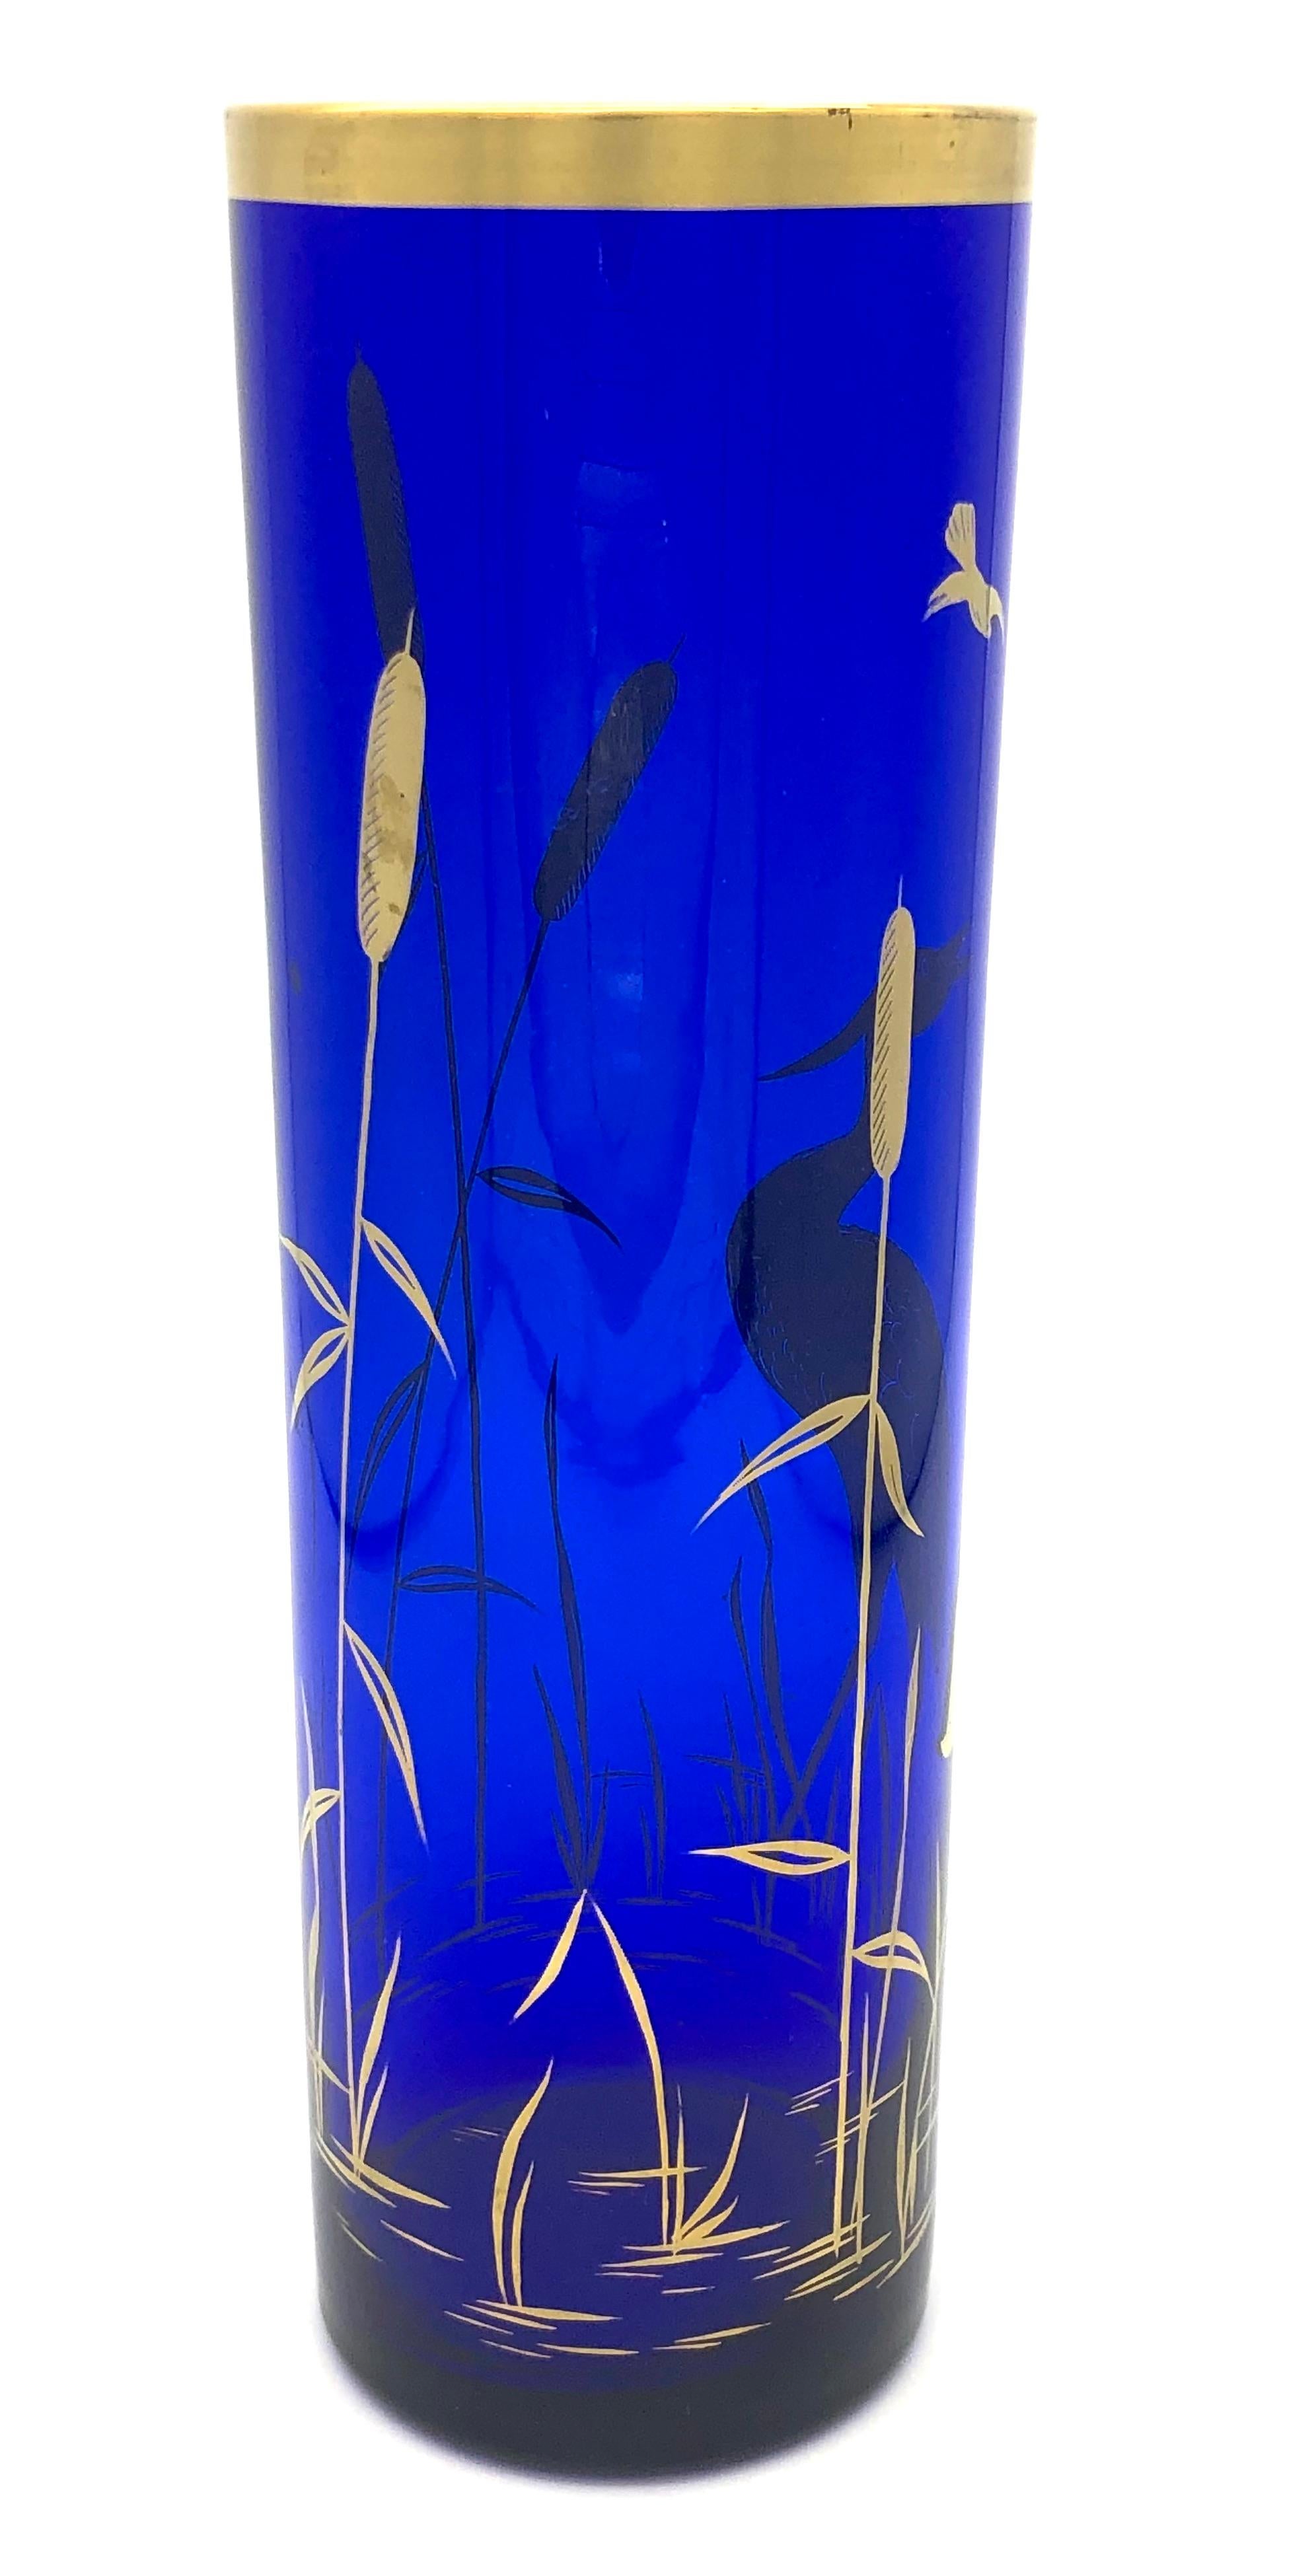 Cet élégant vase en verre bleu cobalt de forme cylindrique est peint à la main avec de l'émail doré, représentant une scène avec une grue dans une rive de roseaux. Dans les arts et l'artisanat asiatiques, la grue est un symbole de longévité et de